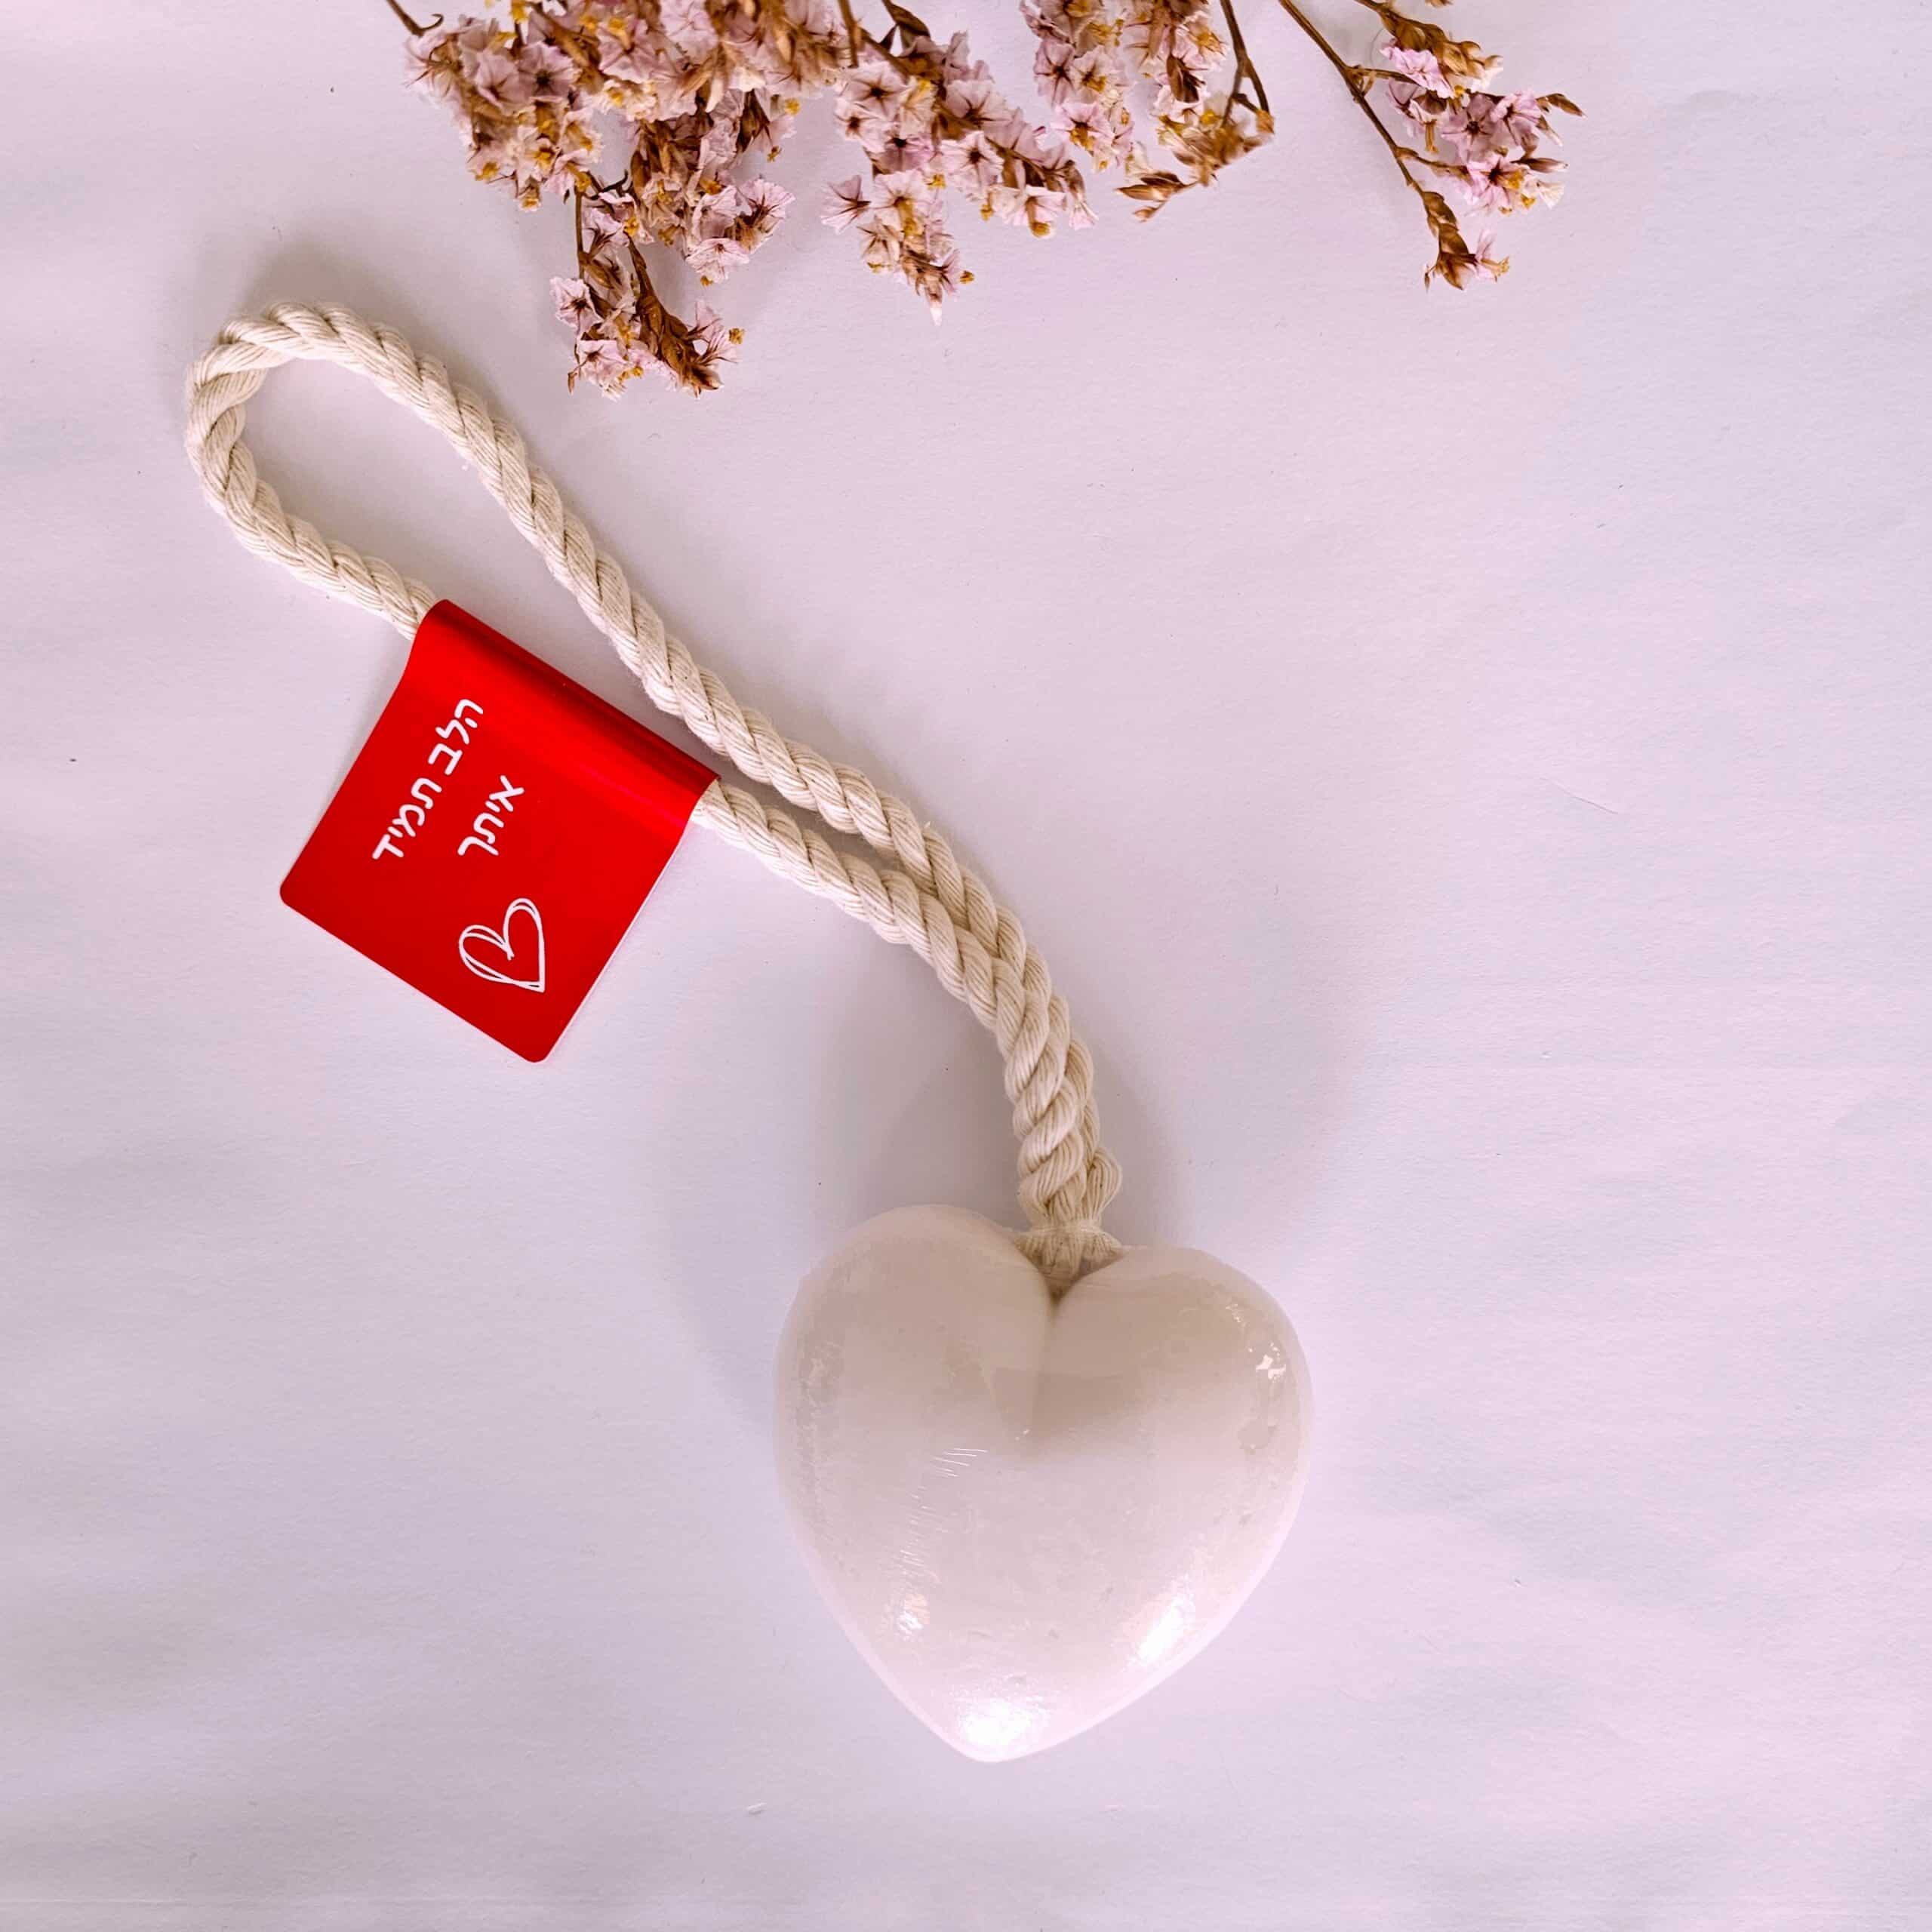 מתנה קטנה עם מסר - סבון לב - הלב תמיד איתך gifted.co.il